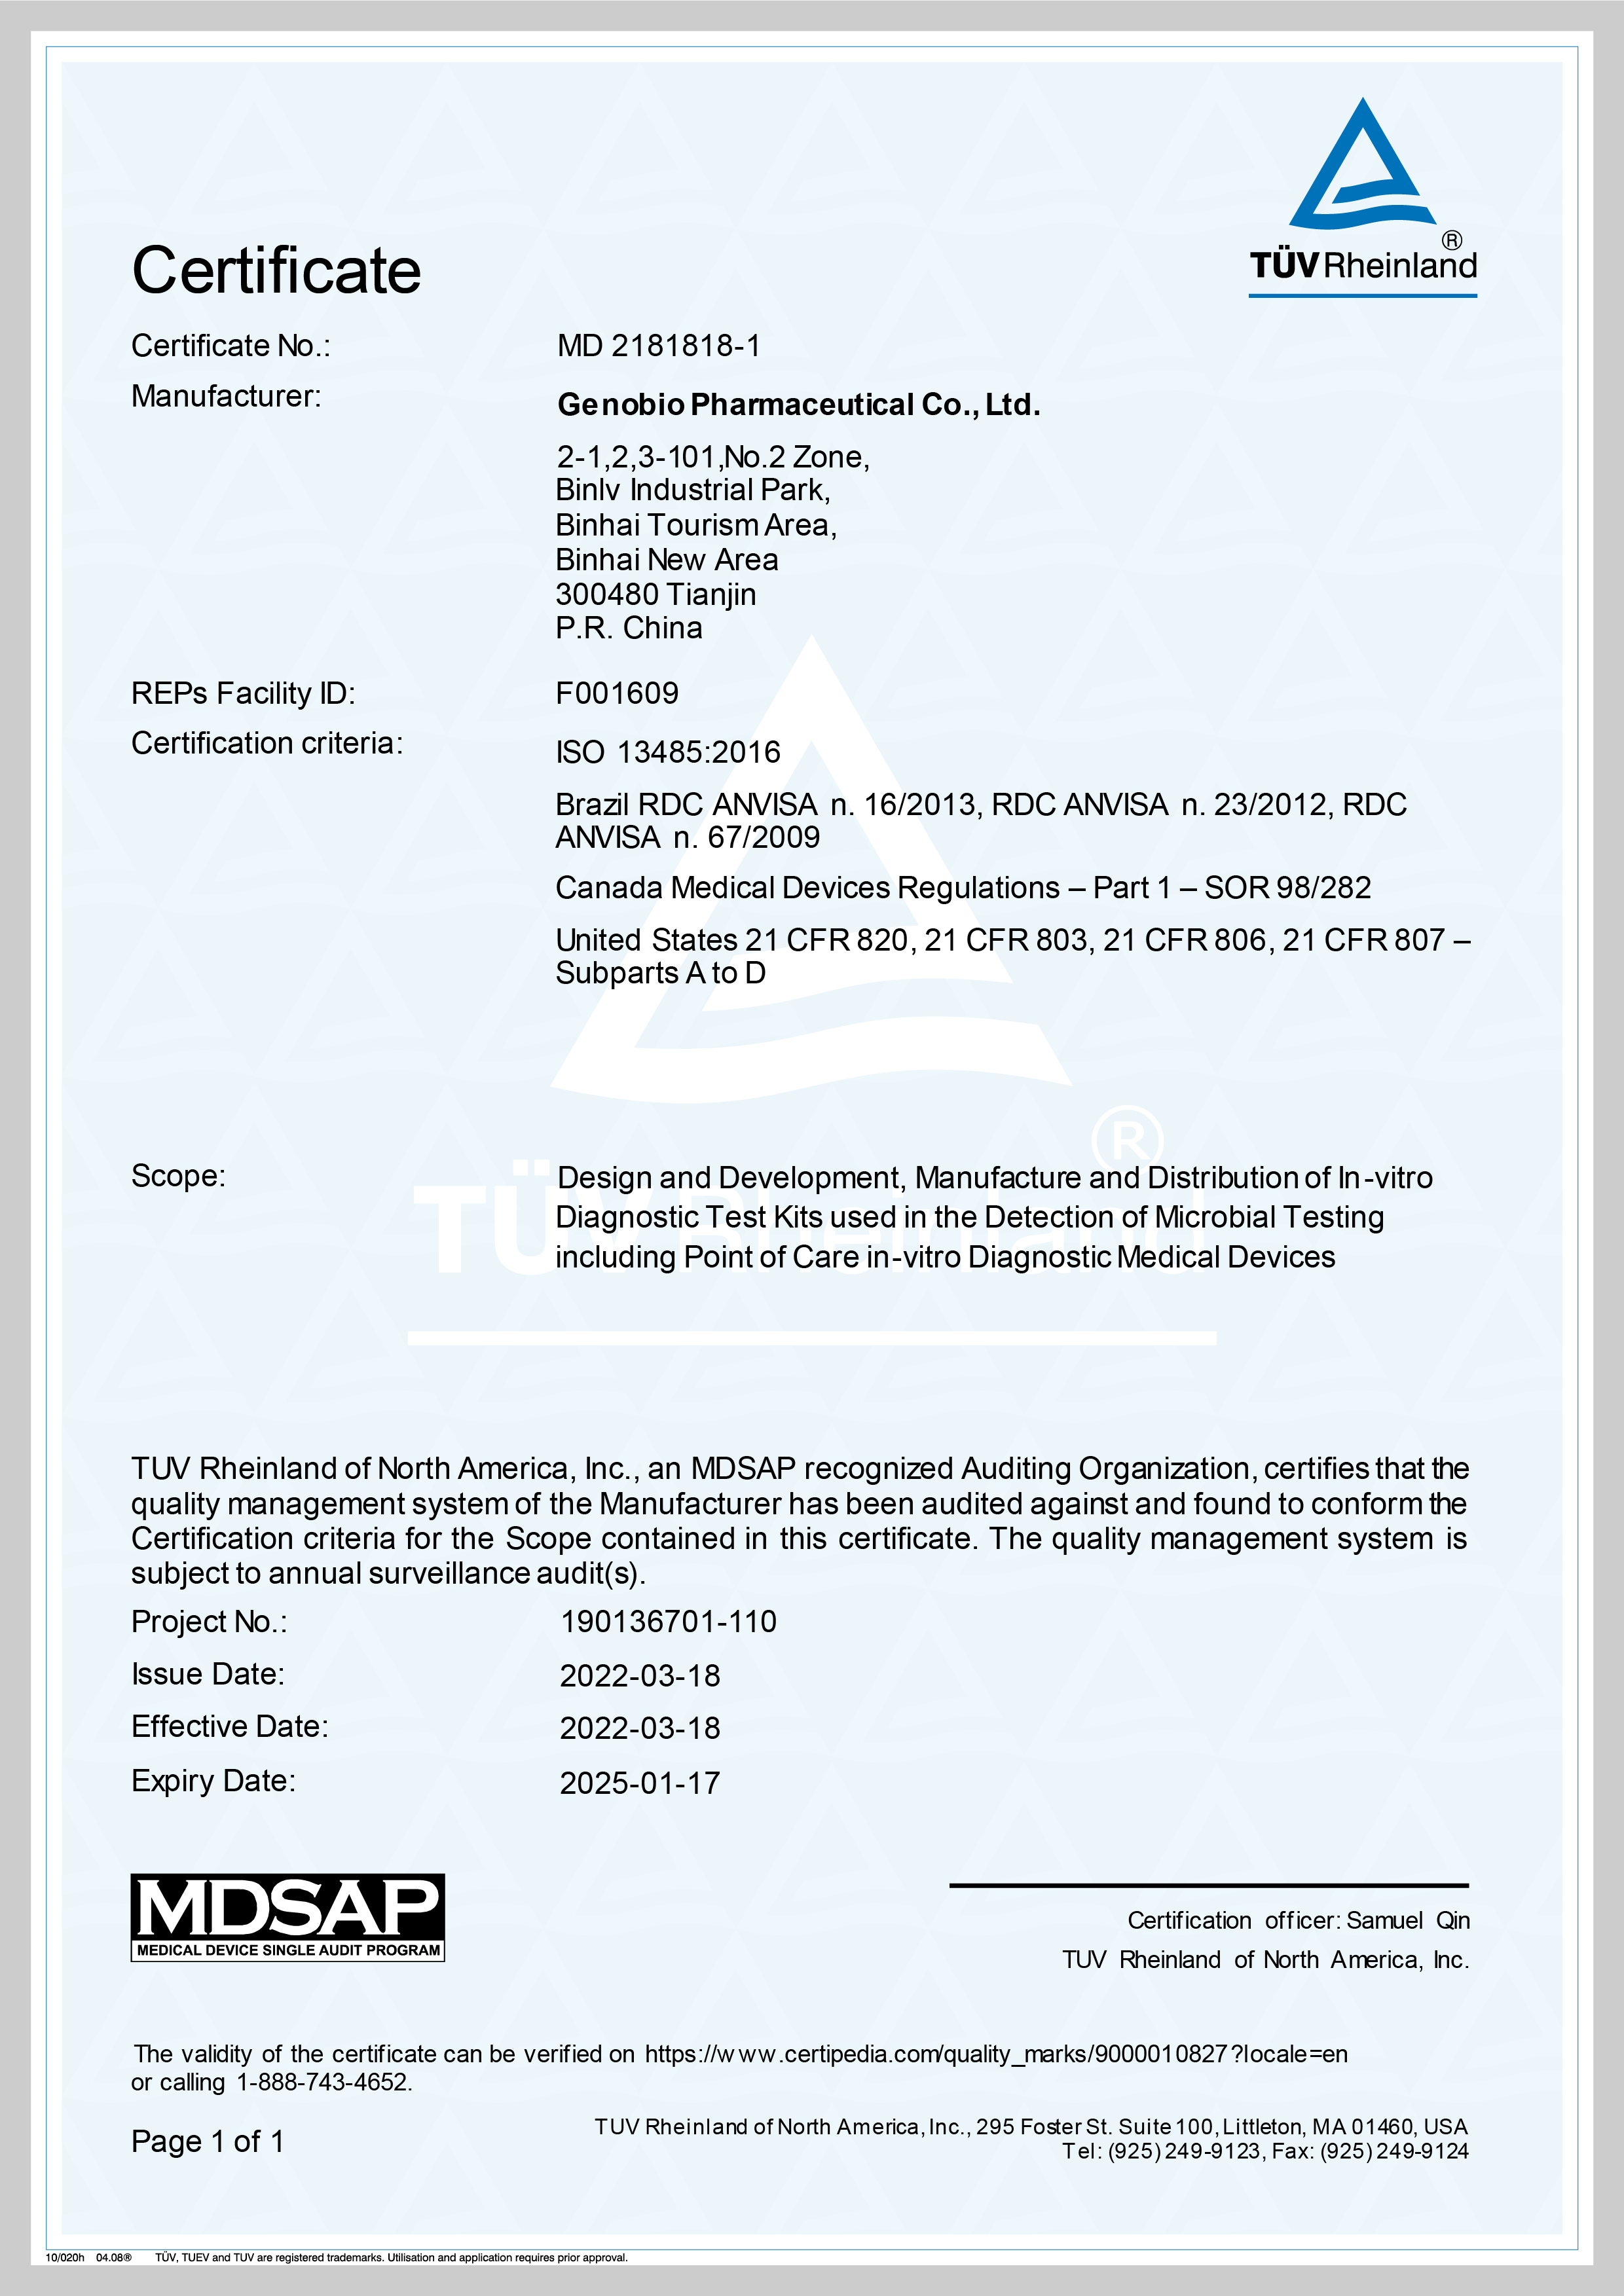 Genobio отримує сертифікат MDSAP — найвищий нормативний стандарт у галузі виробництва медичних пристроїв